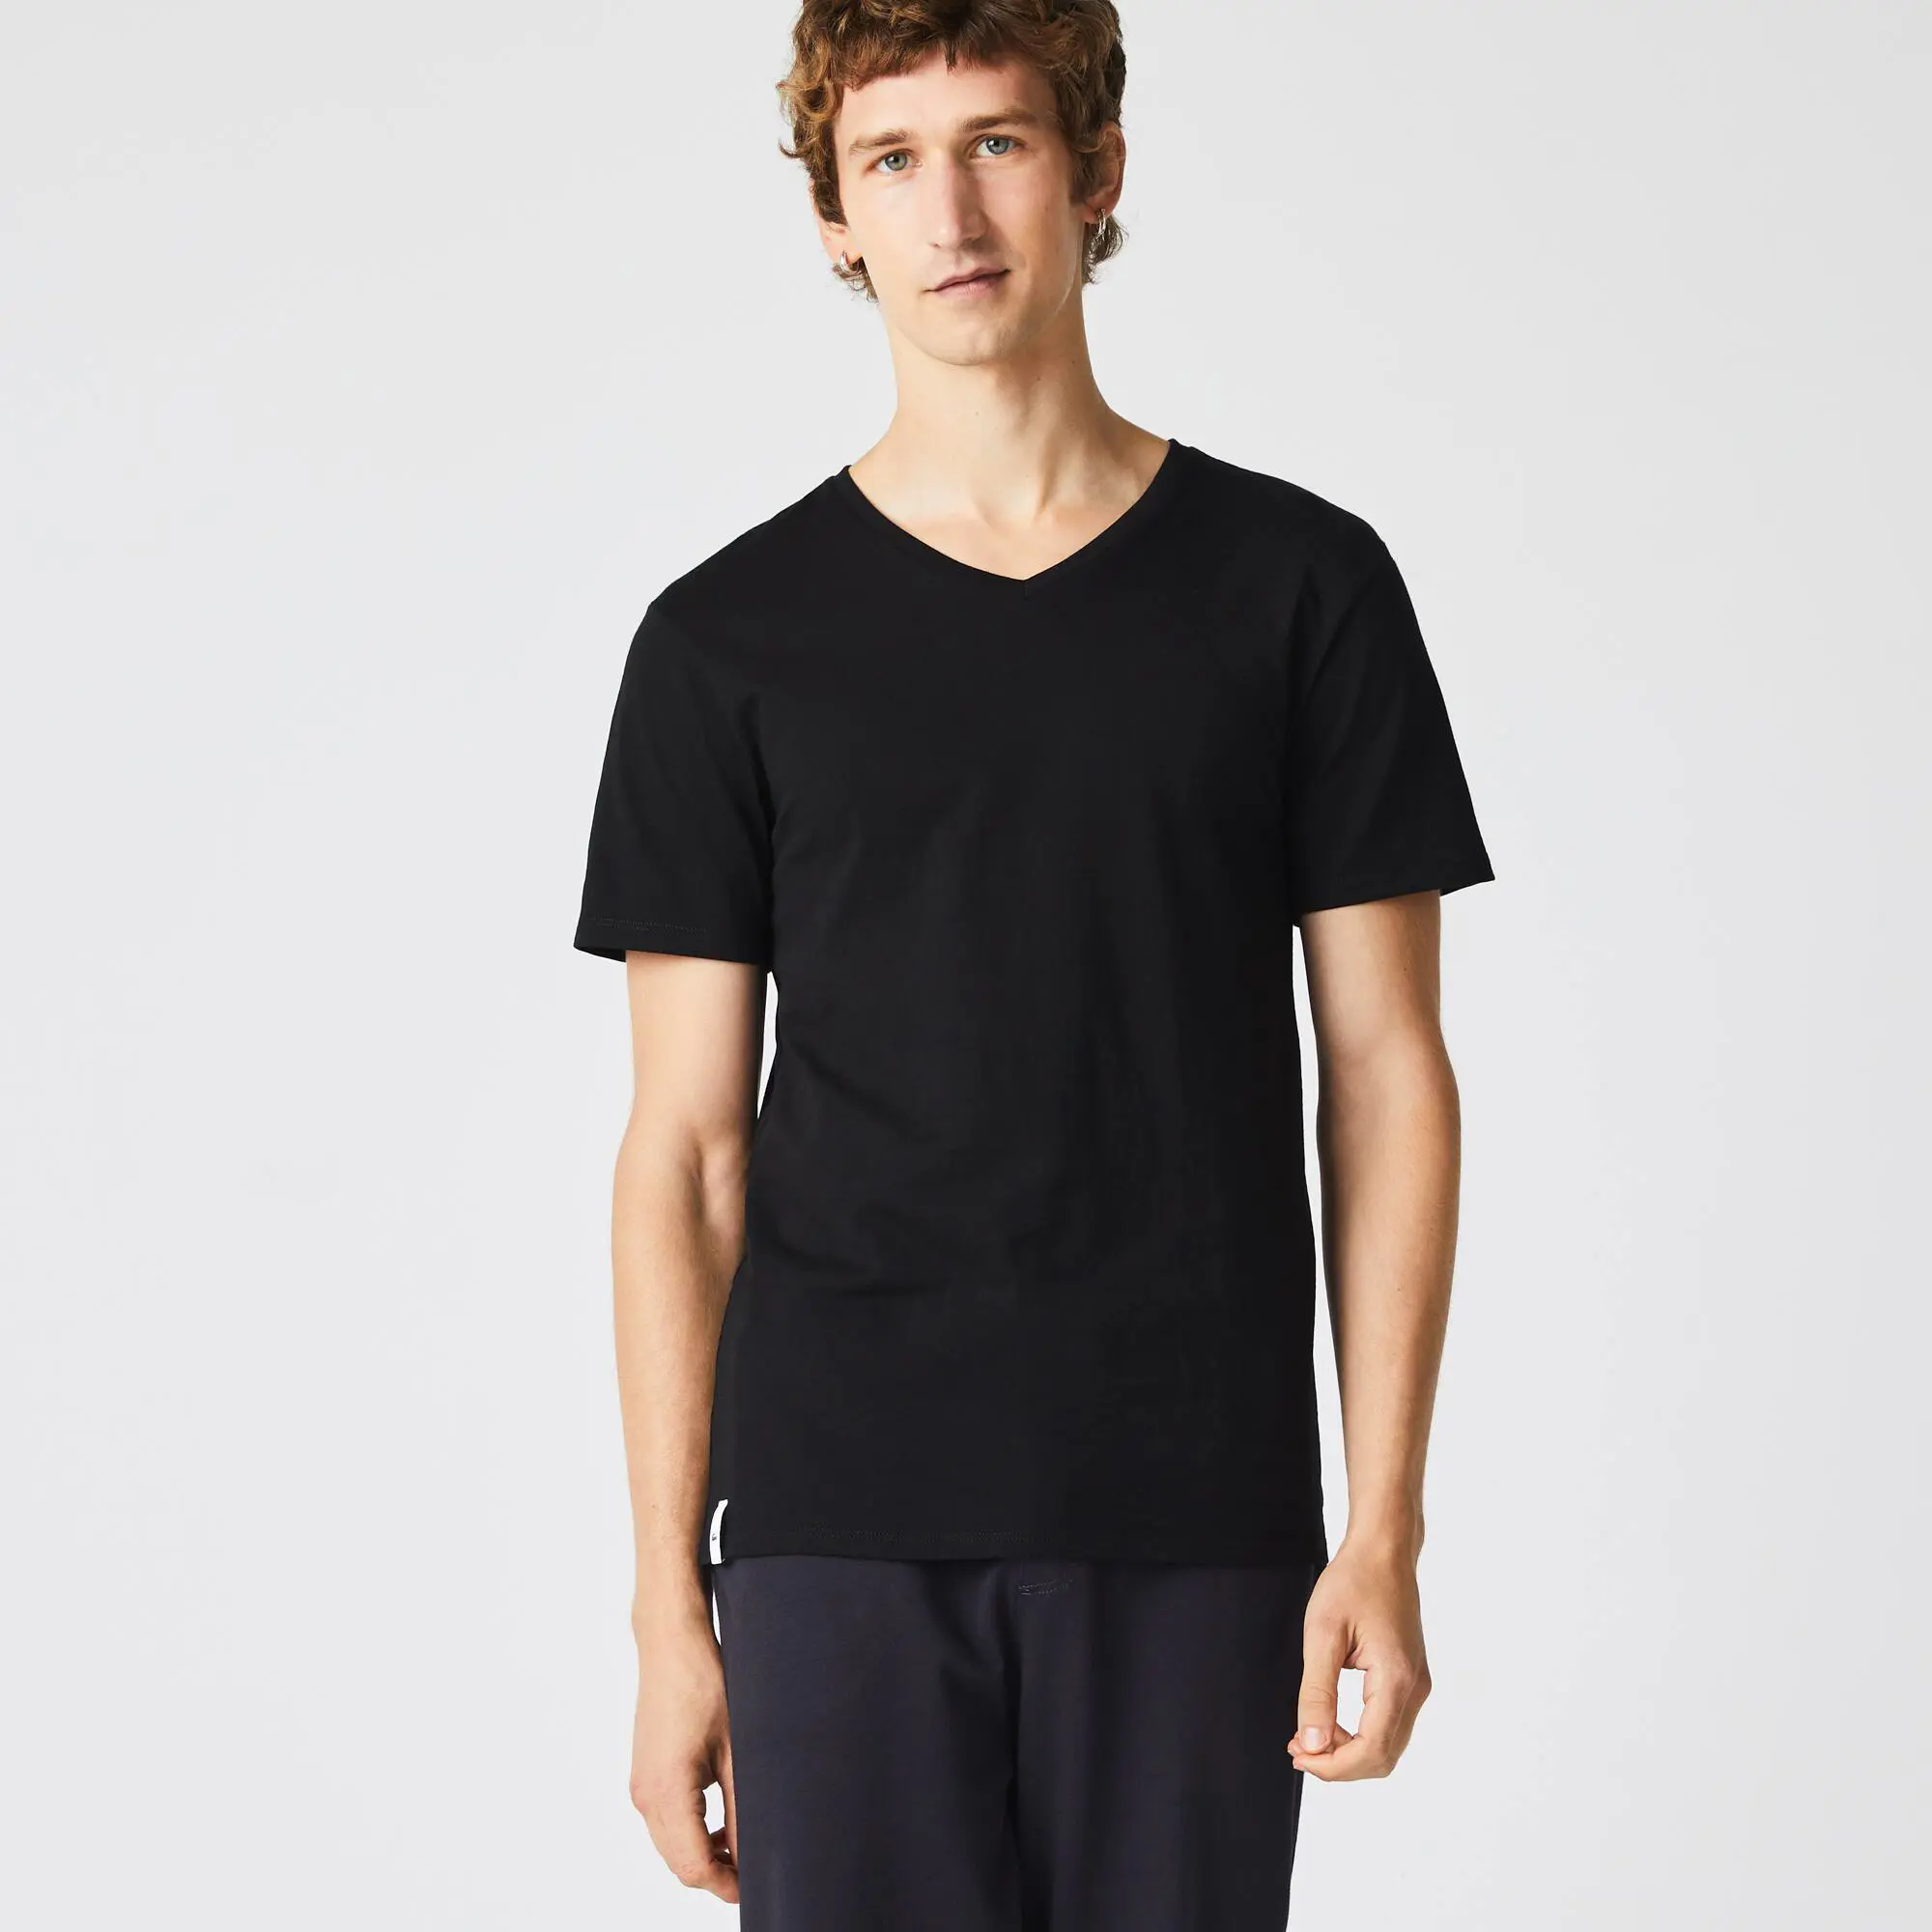 Lacoste Men's Slim Fit V-Neck Cotton T-Shirt 3-Pack. 1